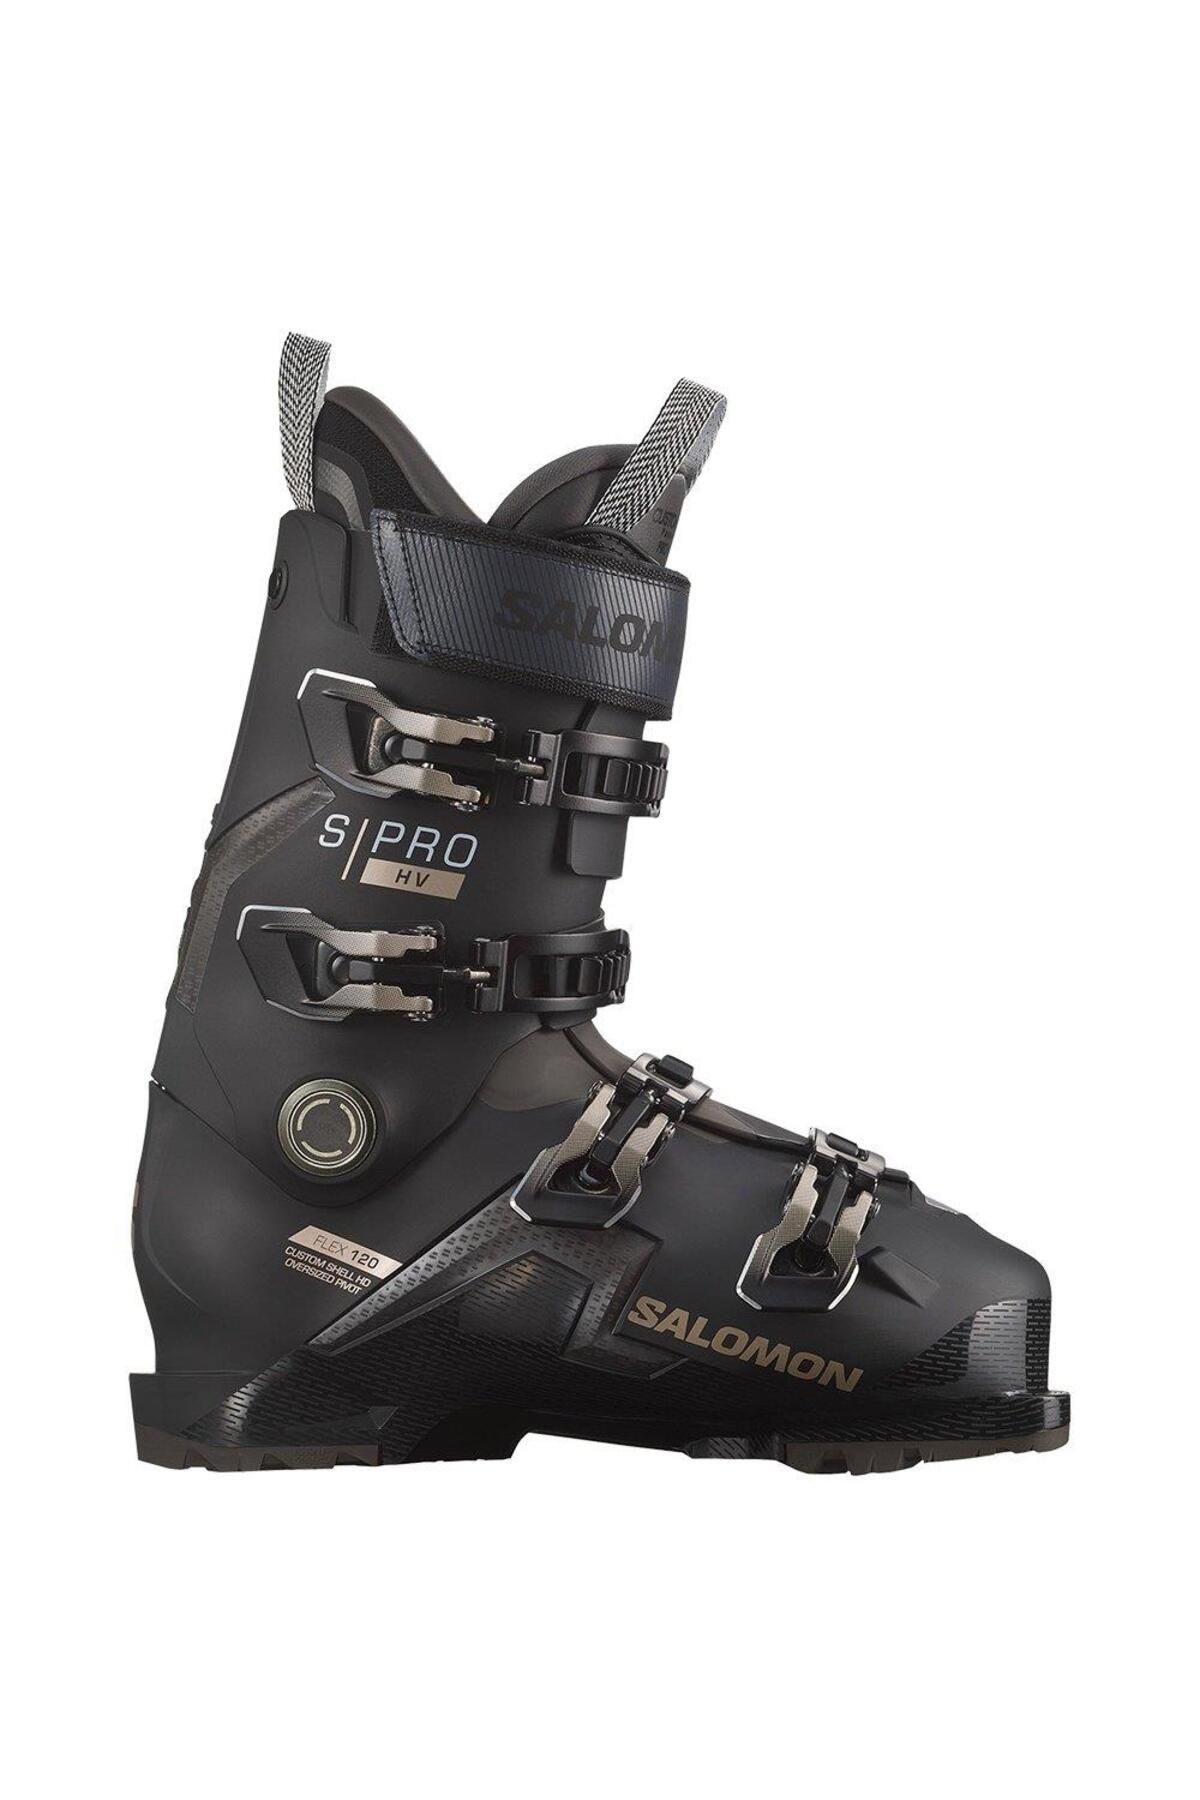 Salomon S/pro Hv 120 Erkek Kayak Ayakkabısı-l47343900t46